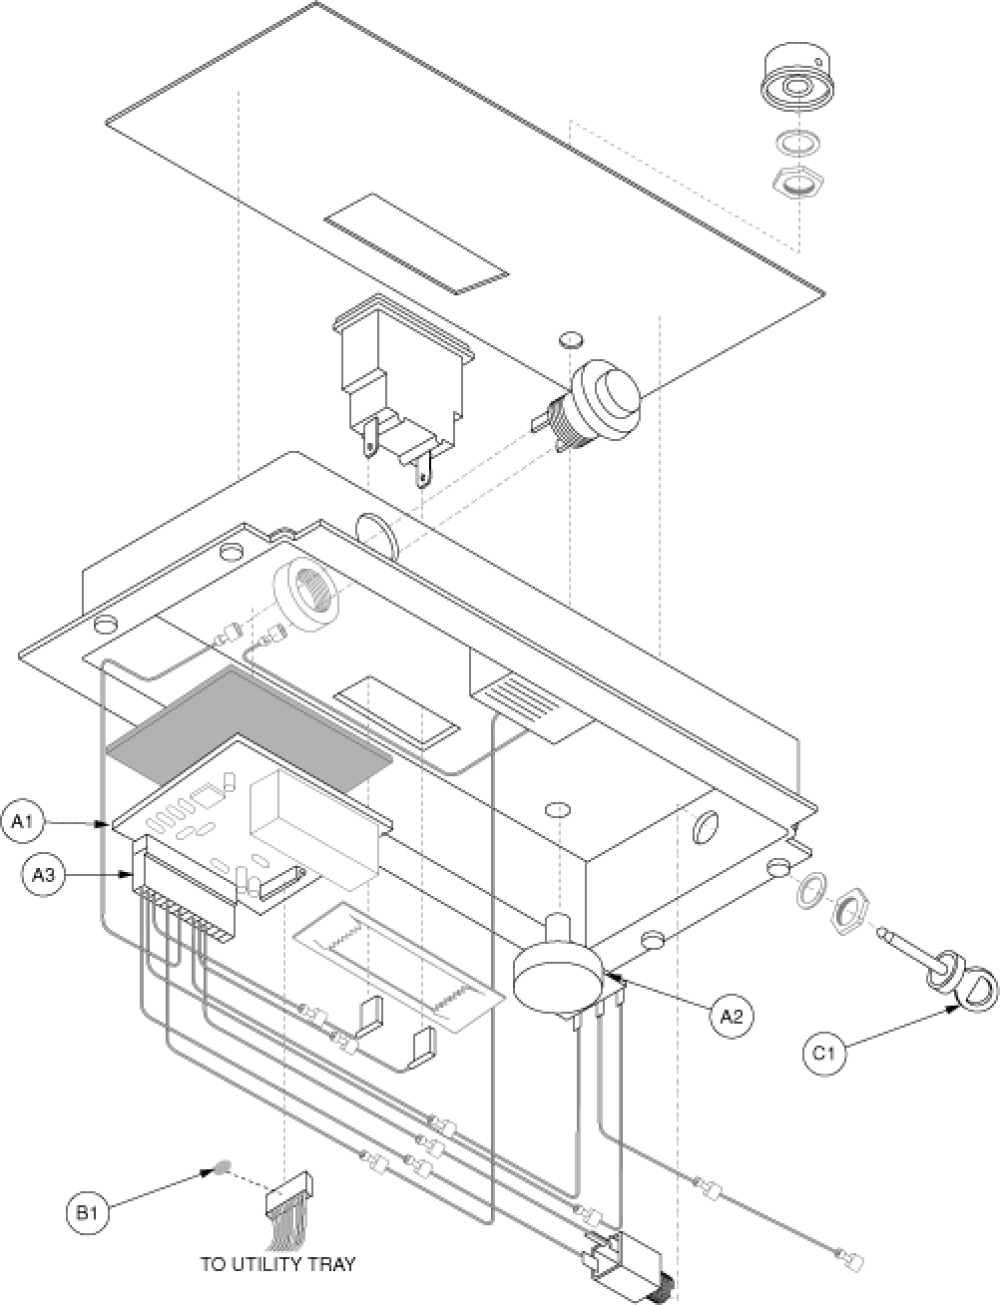 Electronics Assembly - Console, Gen 1 parts diagram